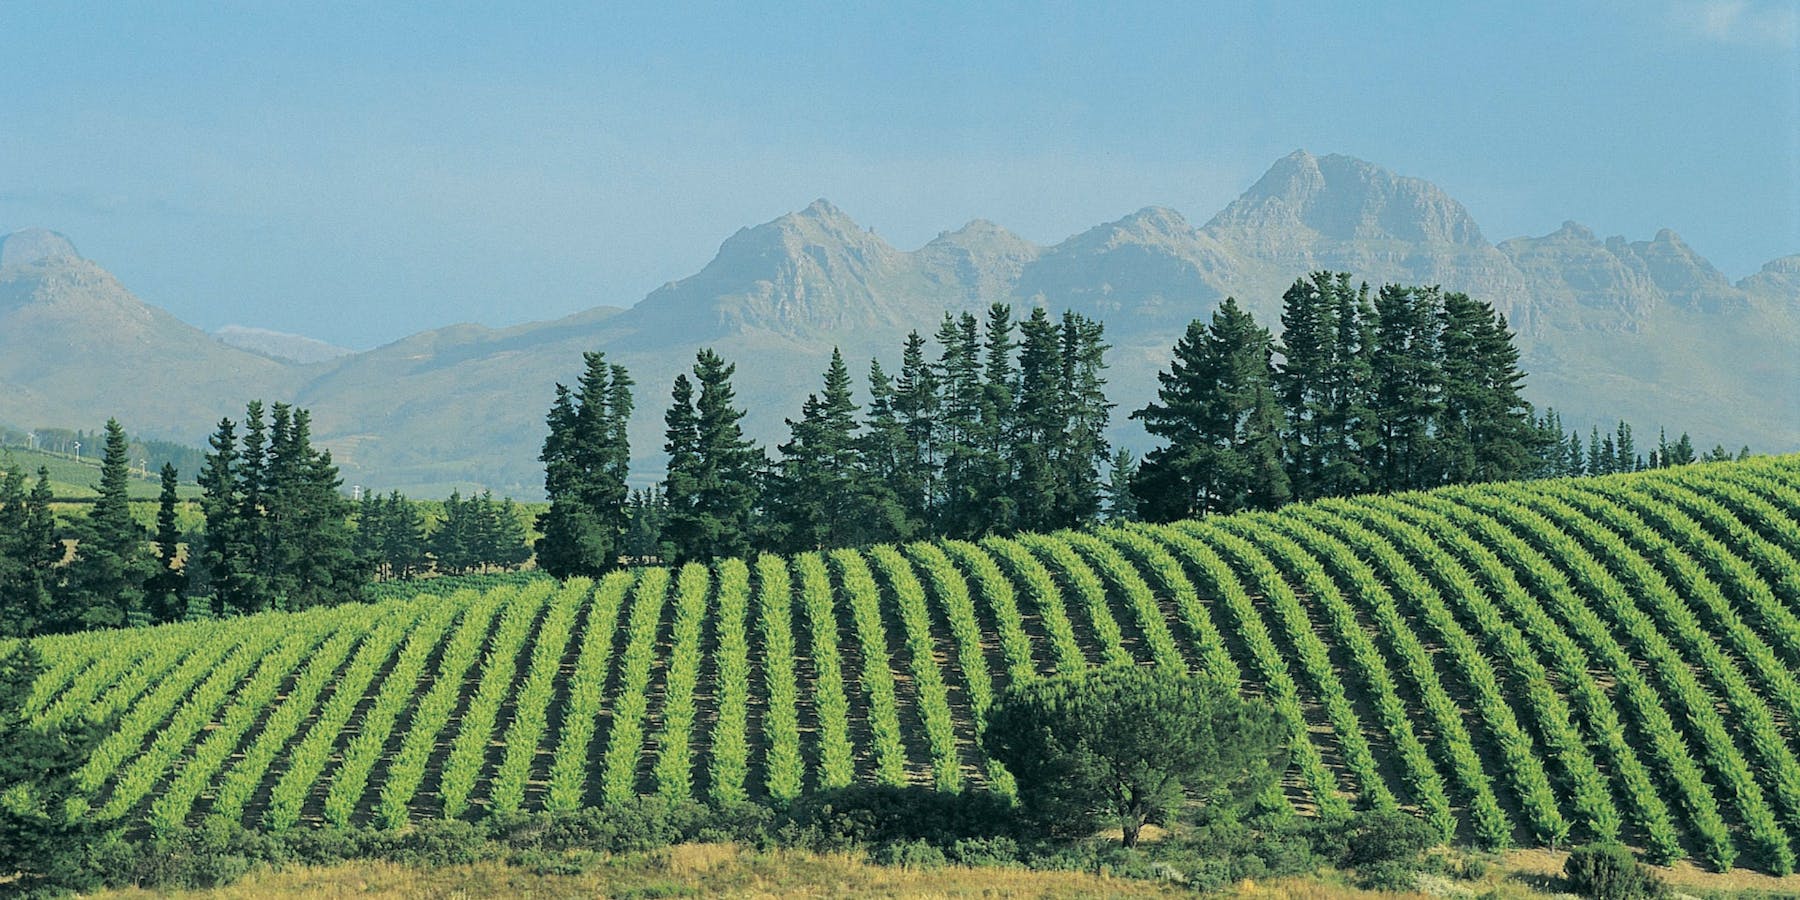 Stellenbosch vineyards in South Africa